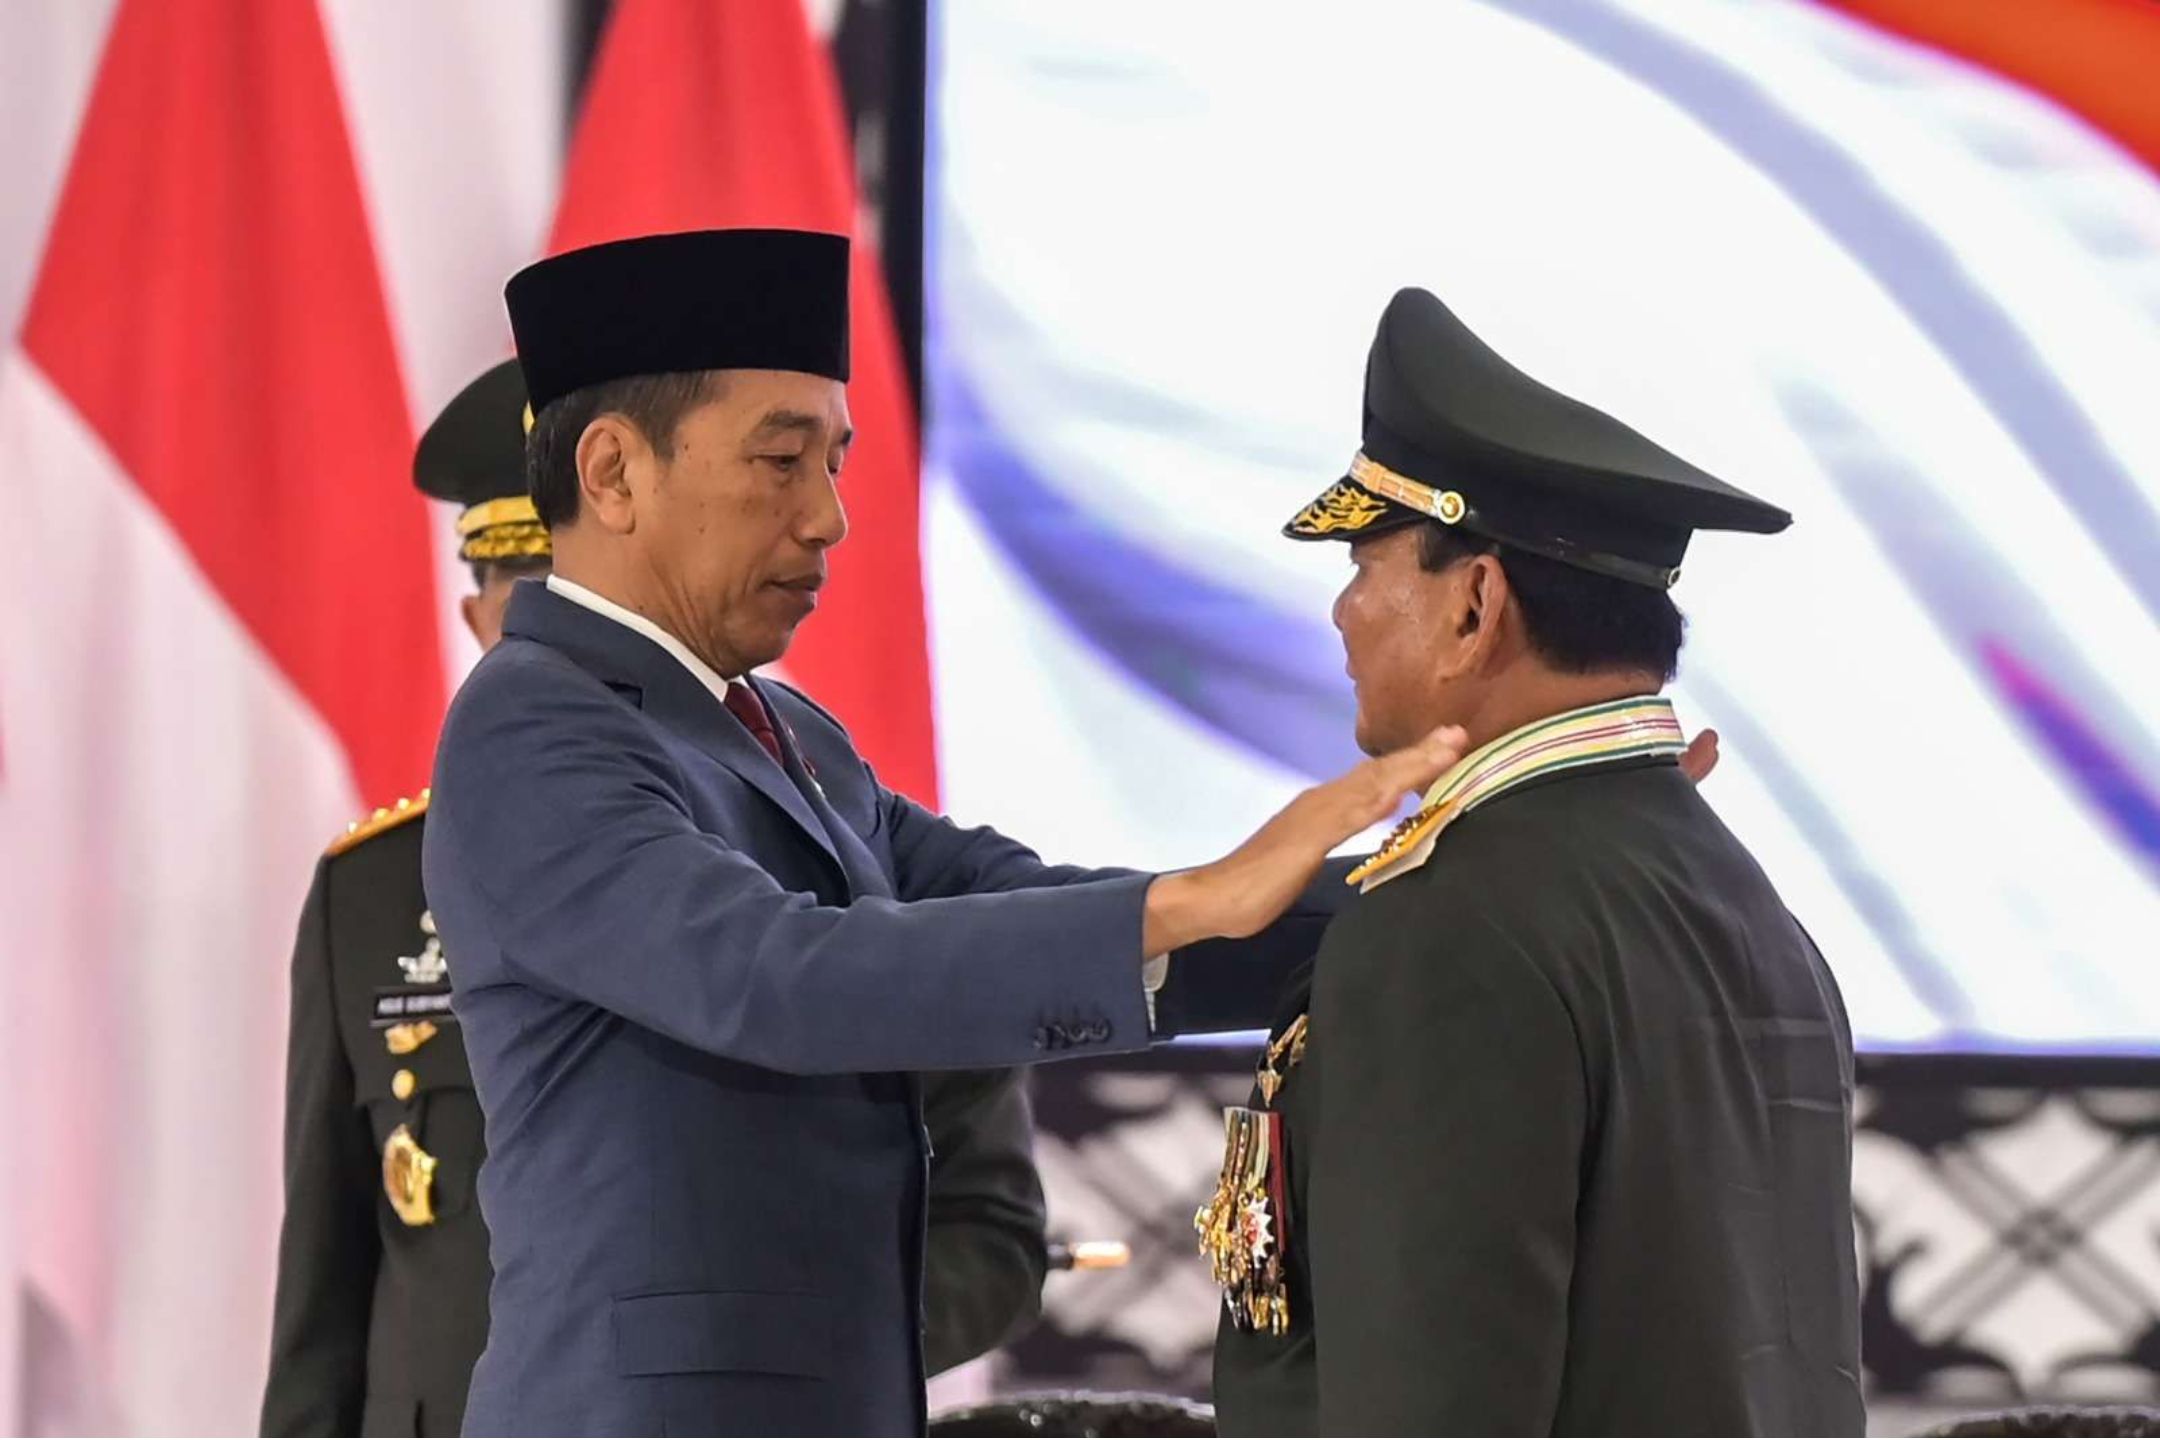 Mengenal Pangkat Jenderal Kehormatan yang Diberikan Jokowi kepada Prabowo